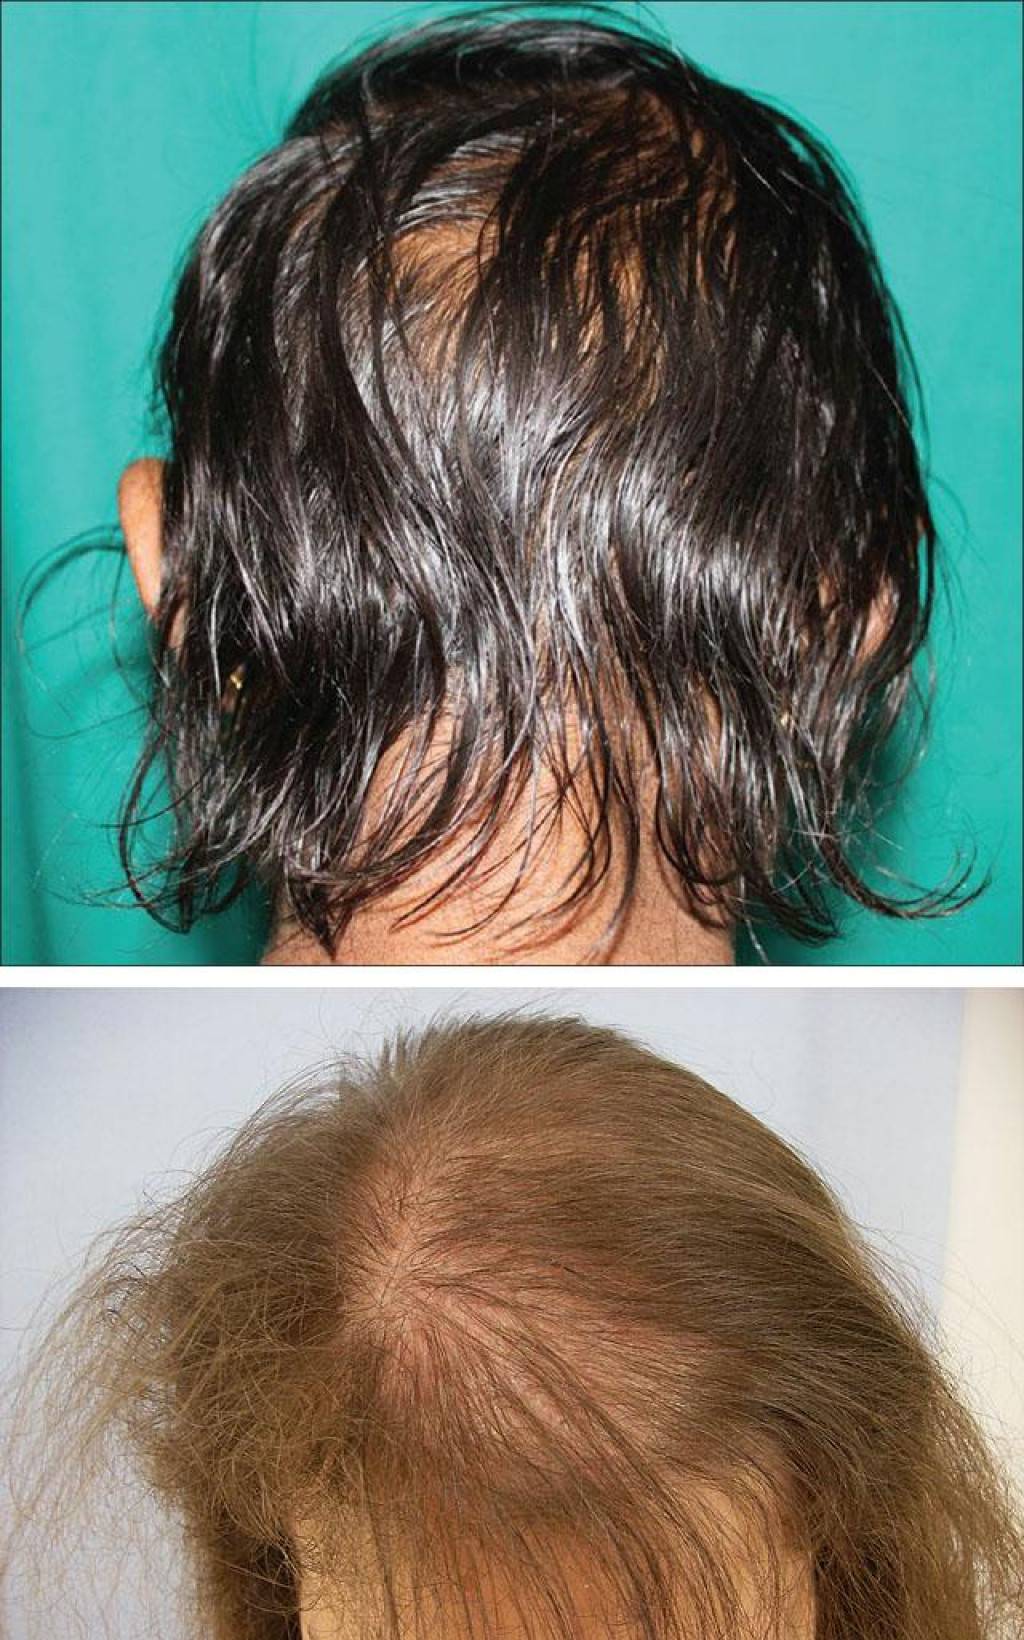 Почему с возрастом волосы истончаются и редеют у женщин